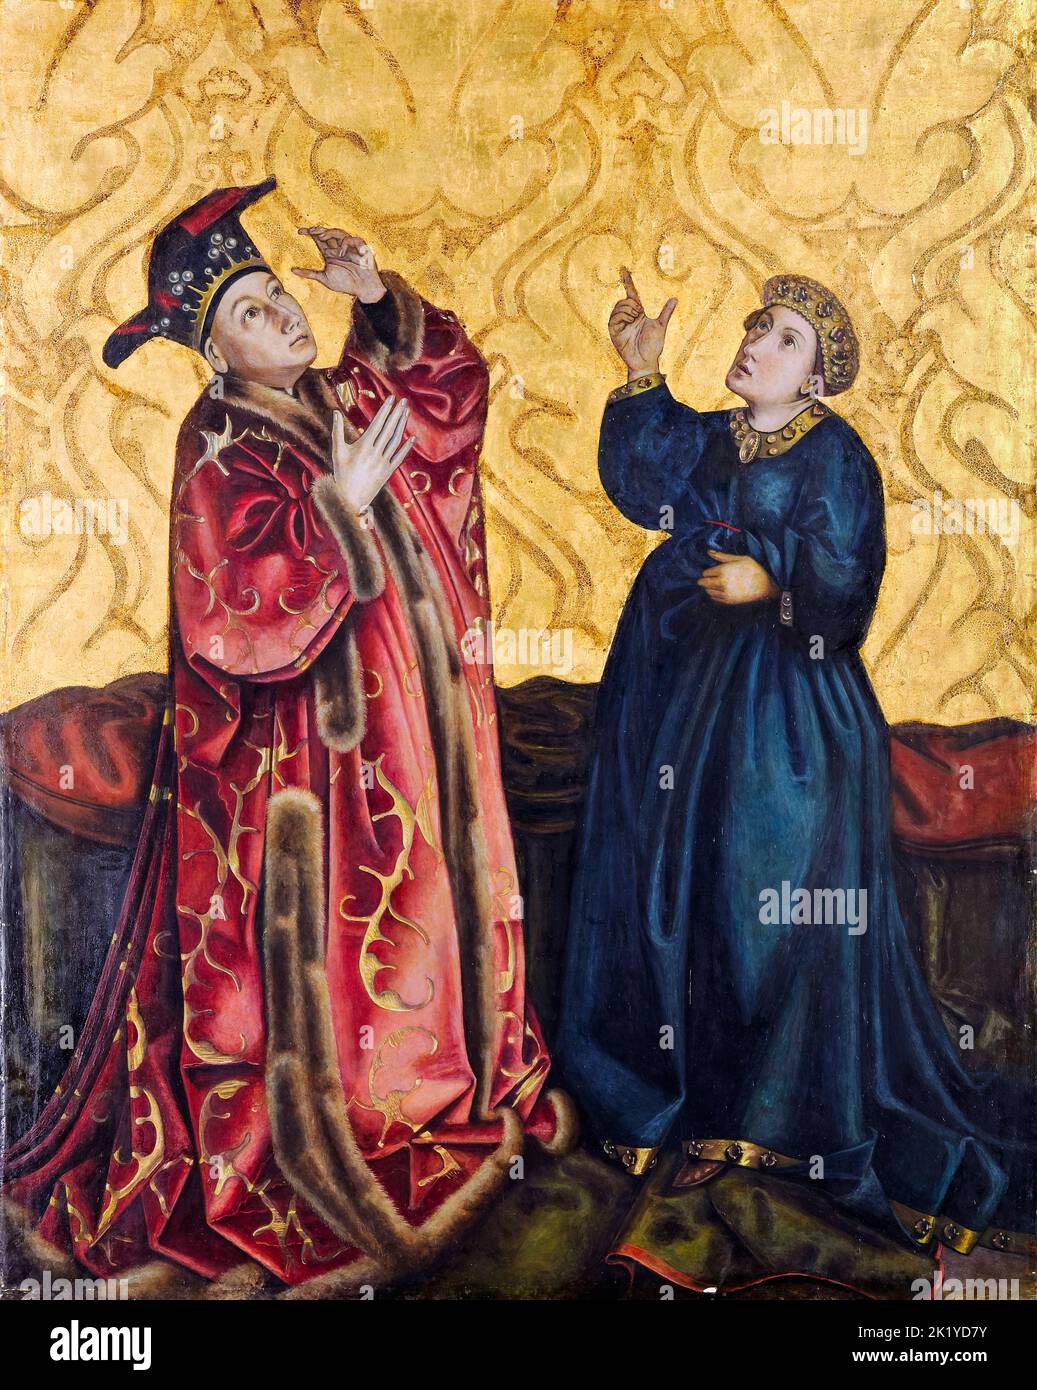 Emperador Augusto y la Sibila Tiburtina, pintura copiada en temple sobre madera por Gertrud Bock-Schnirlin según Konrad Witz, alrededor de 1933 Foto de stock